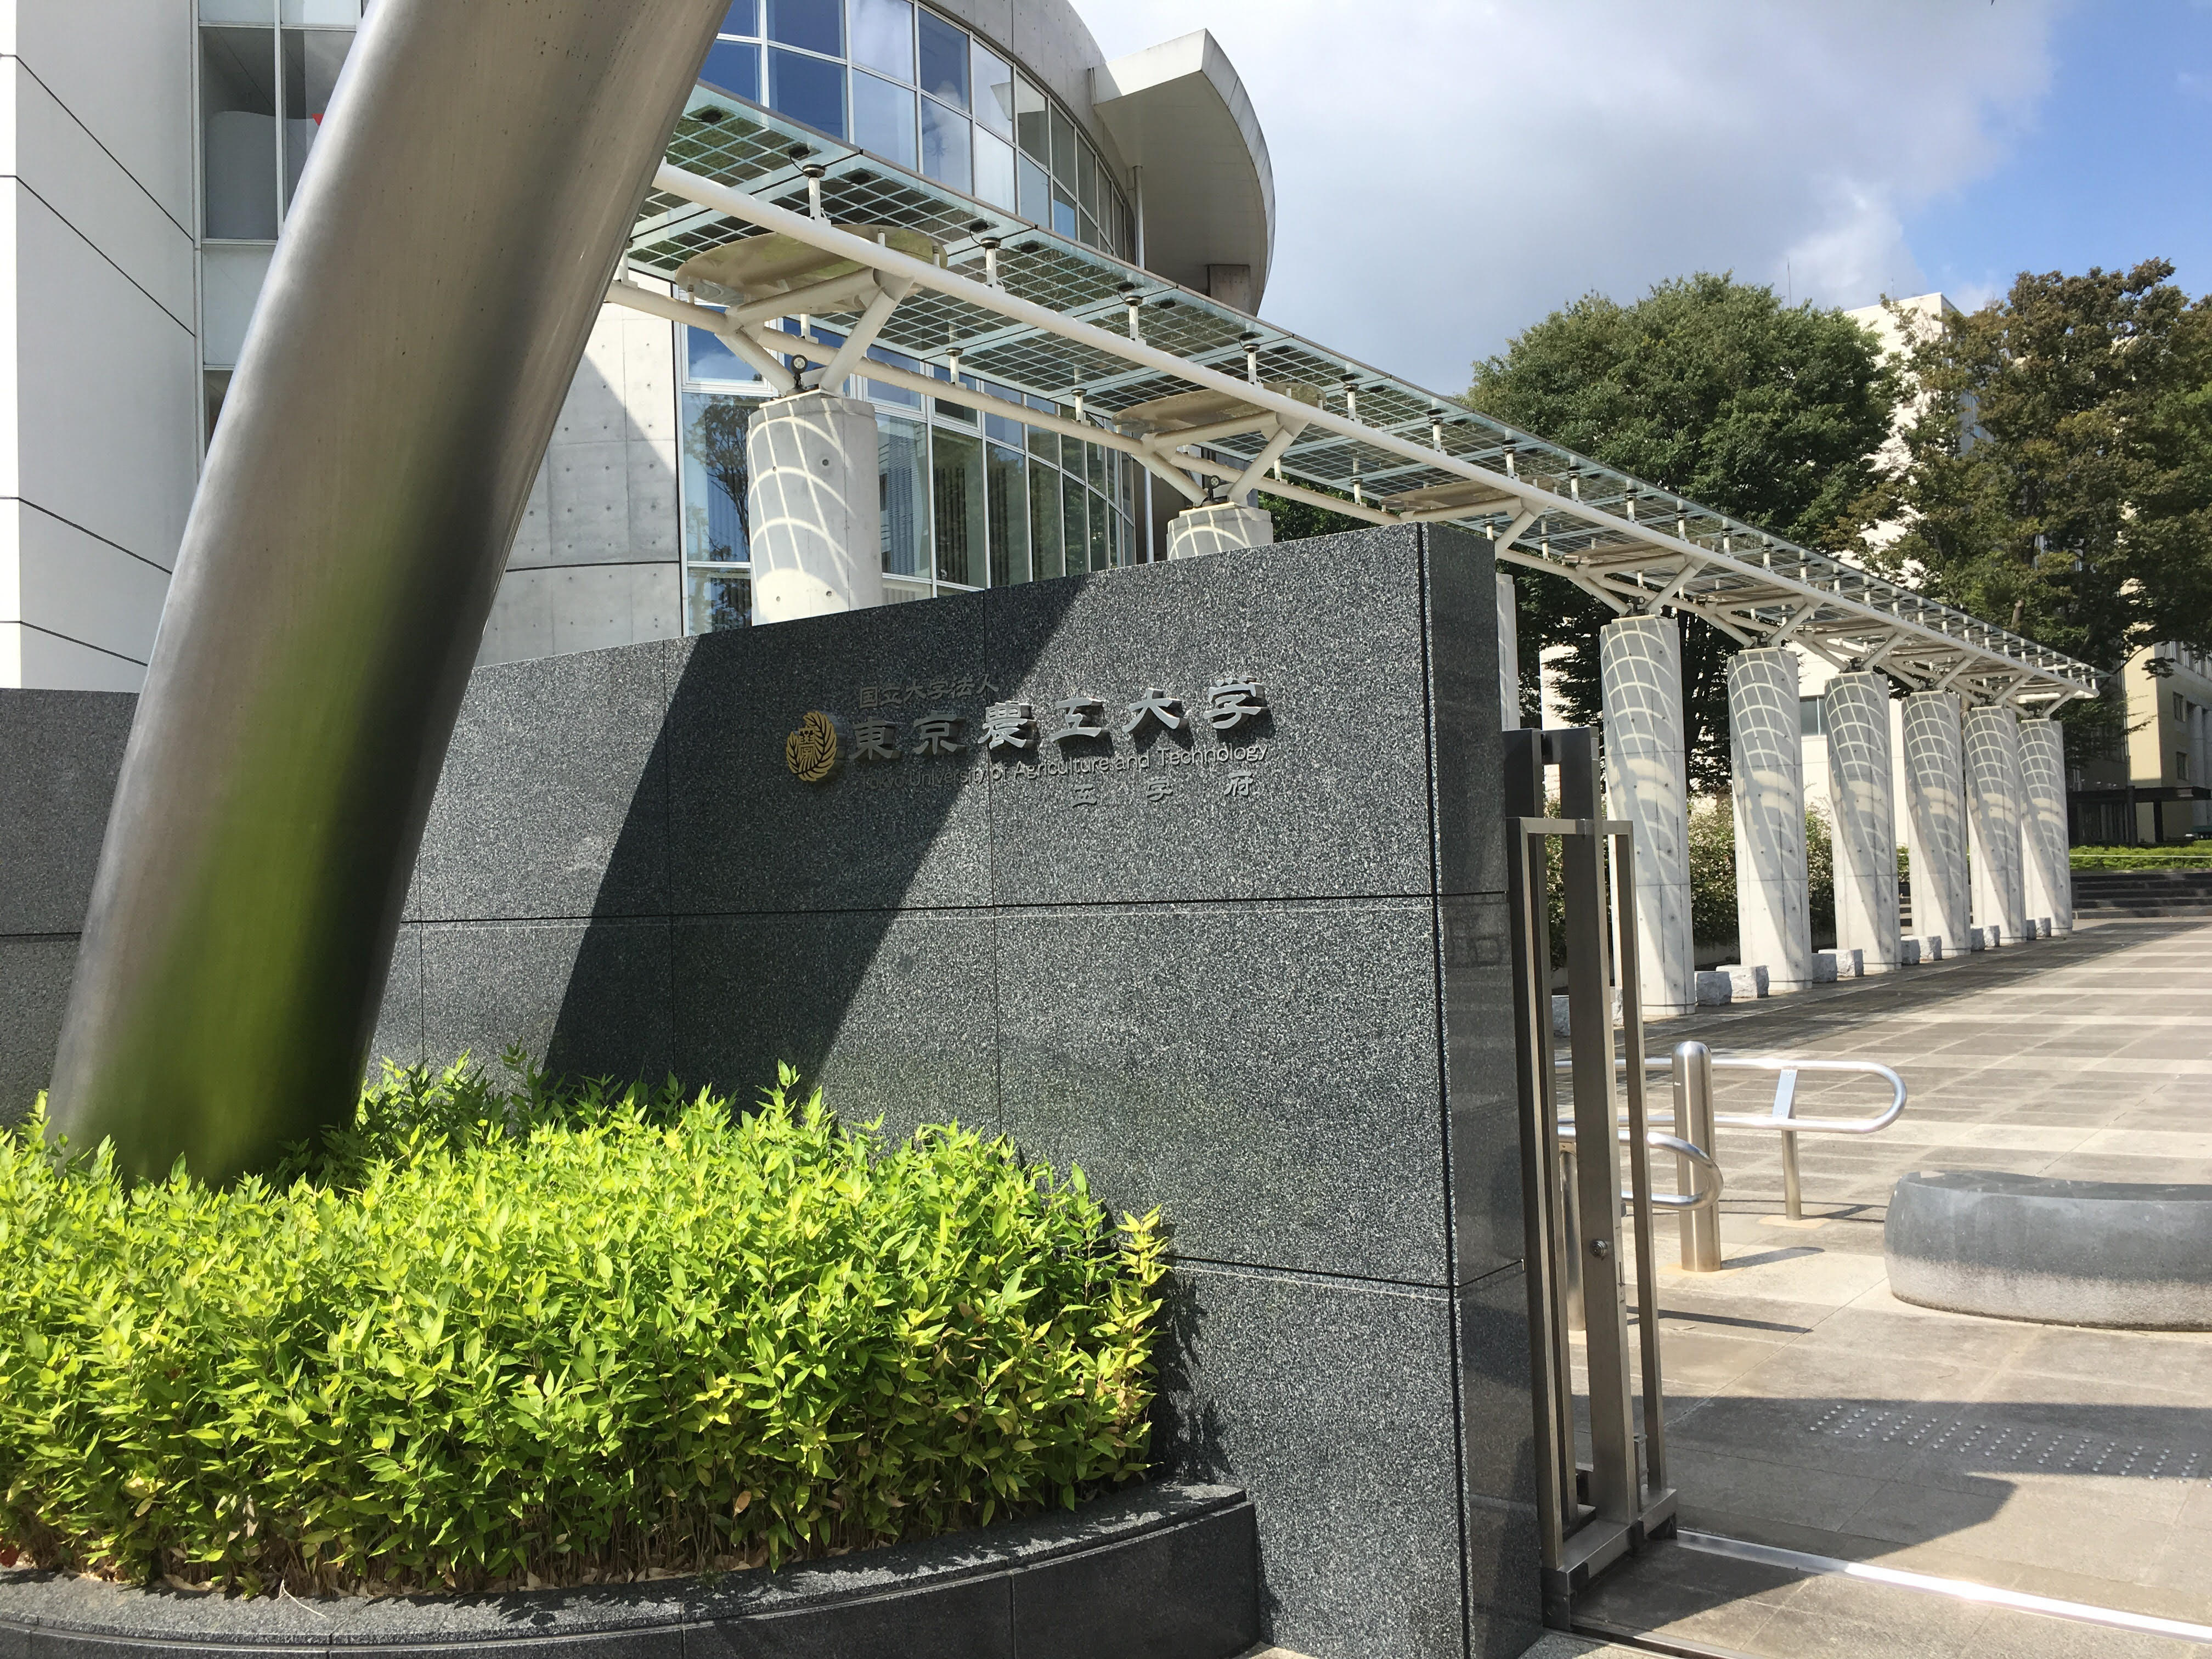 結晶工学スクールの開催場所である東京農工大学の正門を撮影。